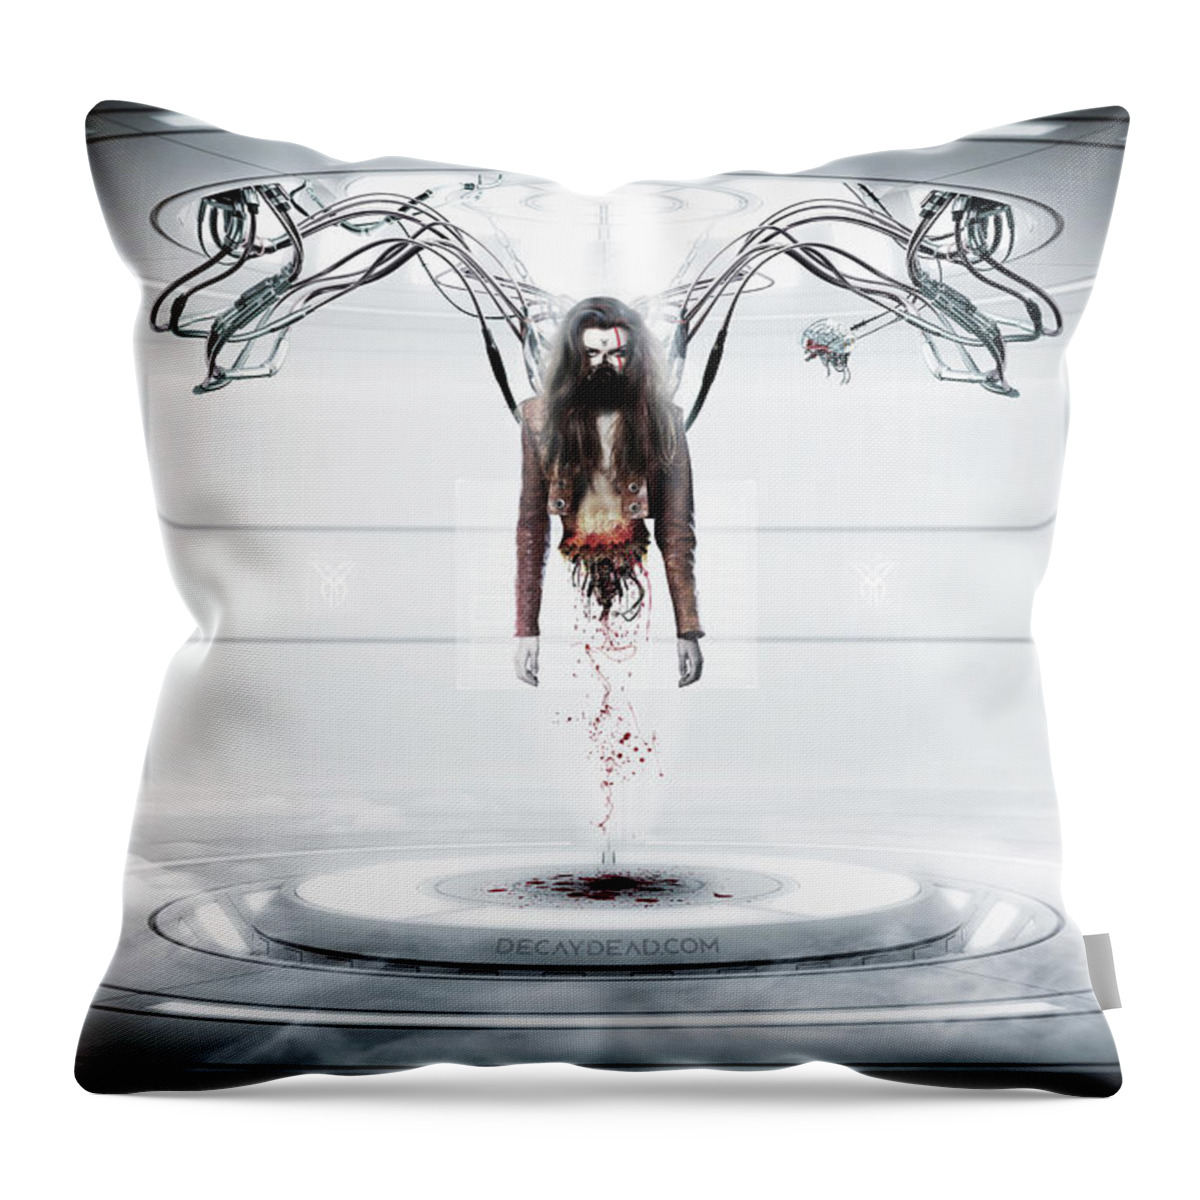 Argus Dorian Throw Pillow featuring the digital art Project Argotica by Argus Dorian